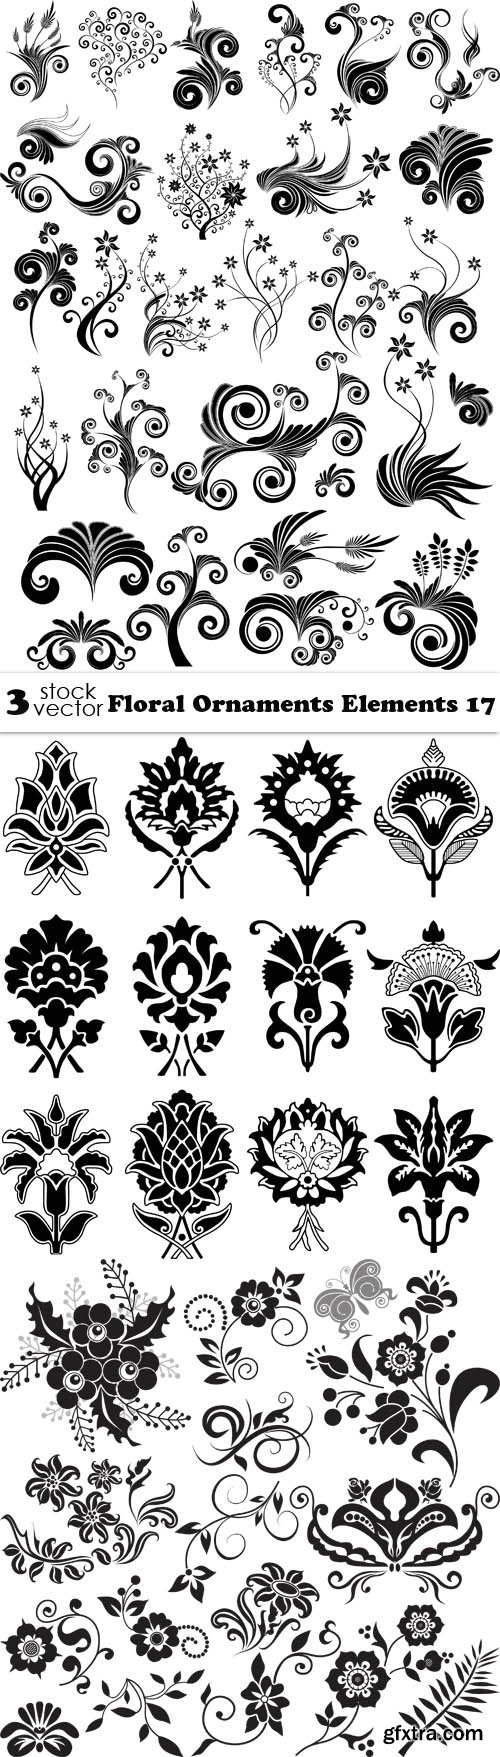 Vectors - Floral Ornaments Elements 17